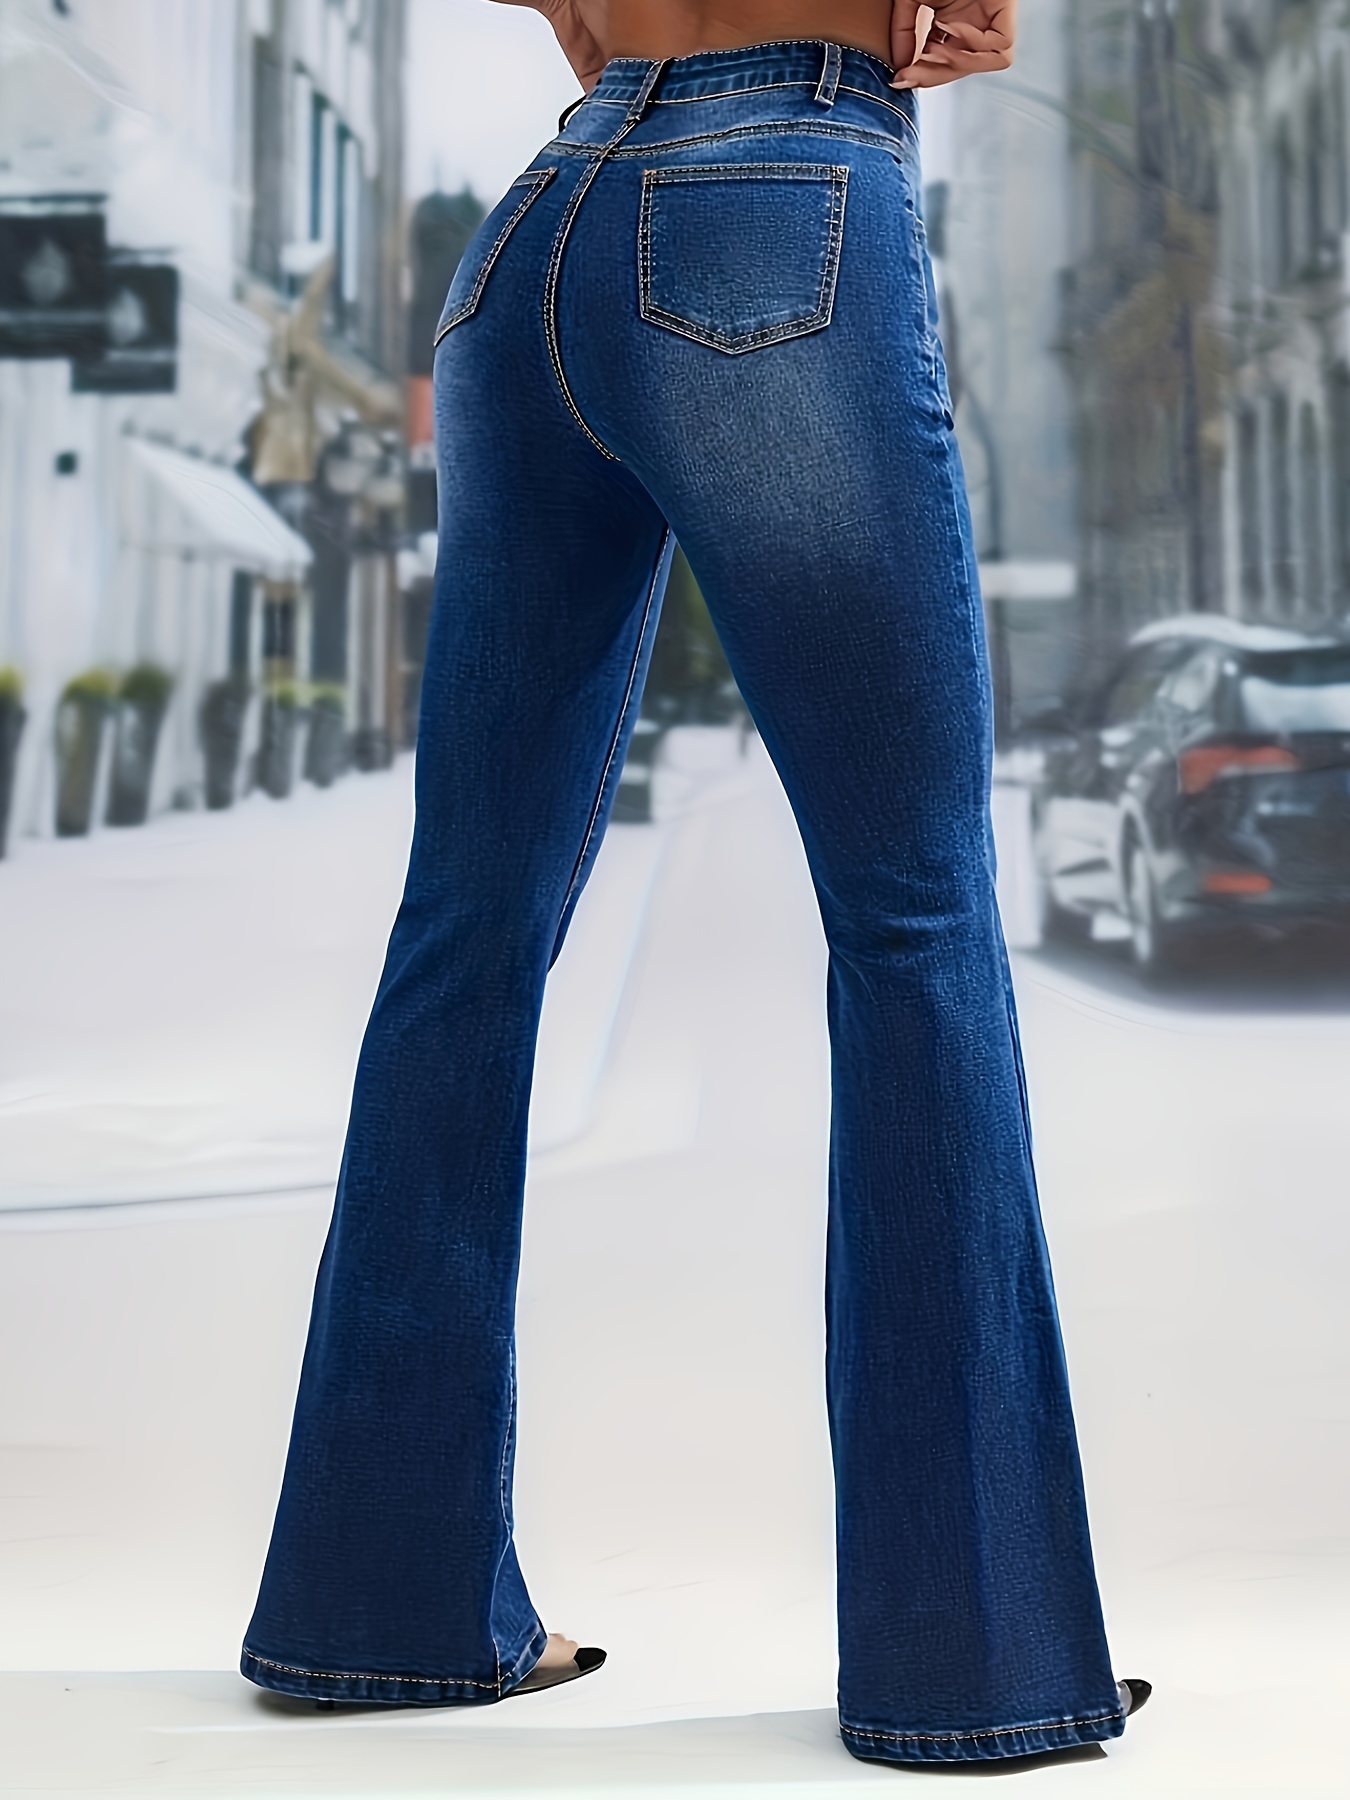 Jeans Acampanados De Cintura Alta Azul, Pantalones De Mezclilla Con  Bolsillos Oblicuos Y Botón De Campana En La Parte Inferior, Jeans Y Ropa De  Mezcli